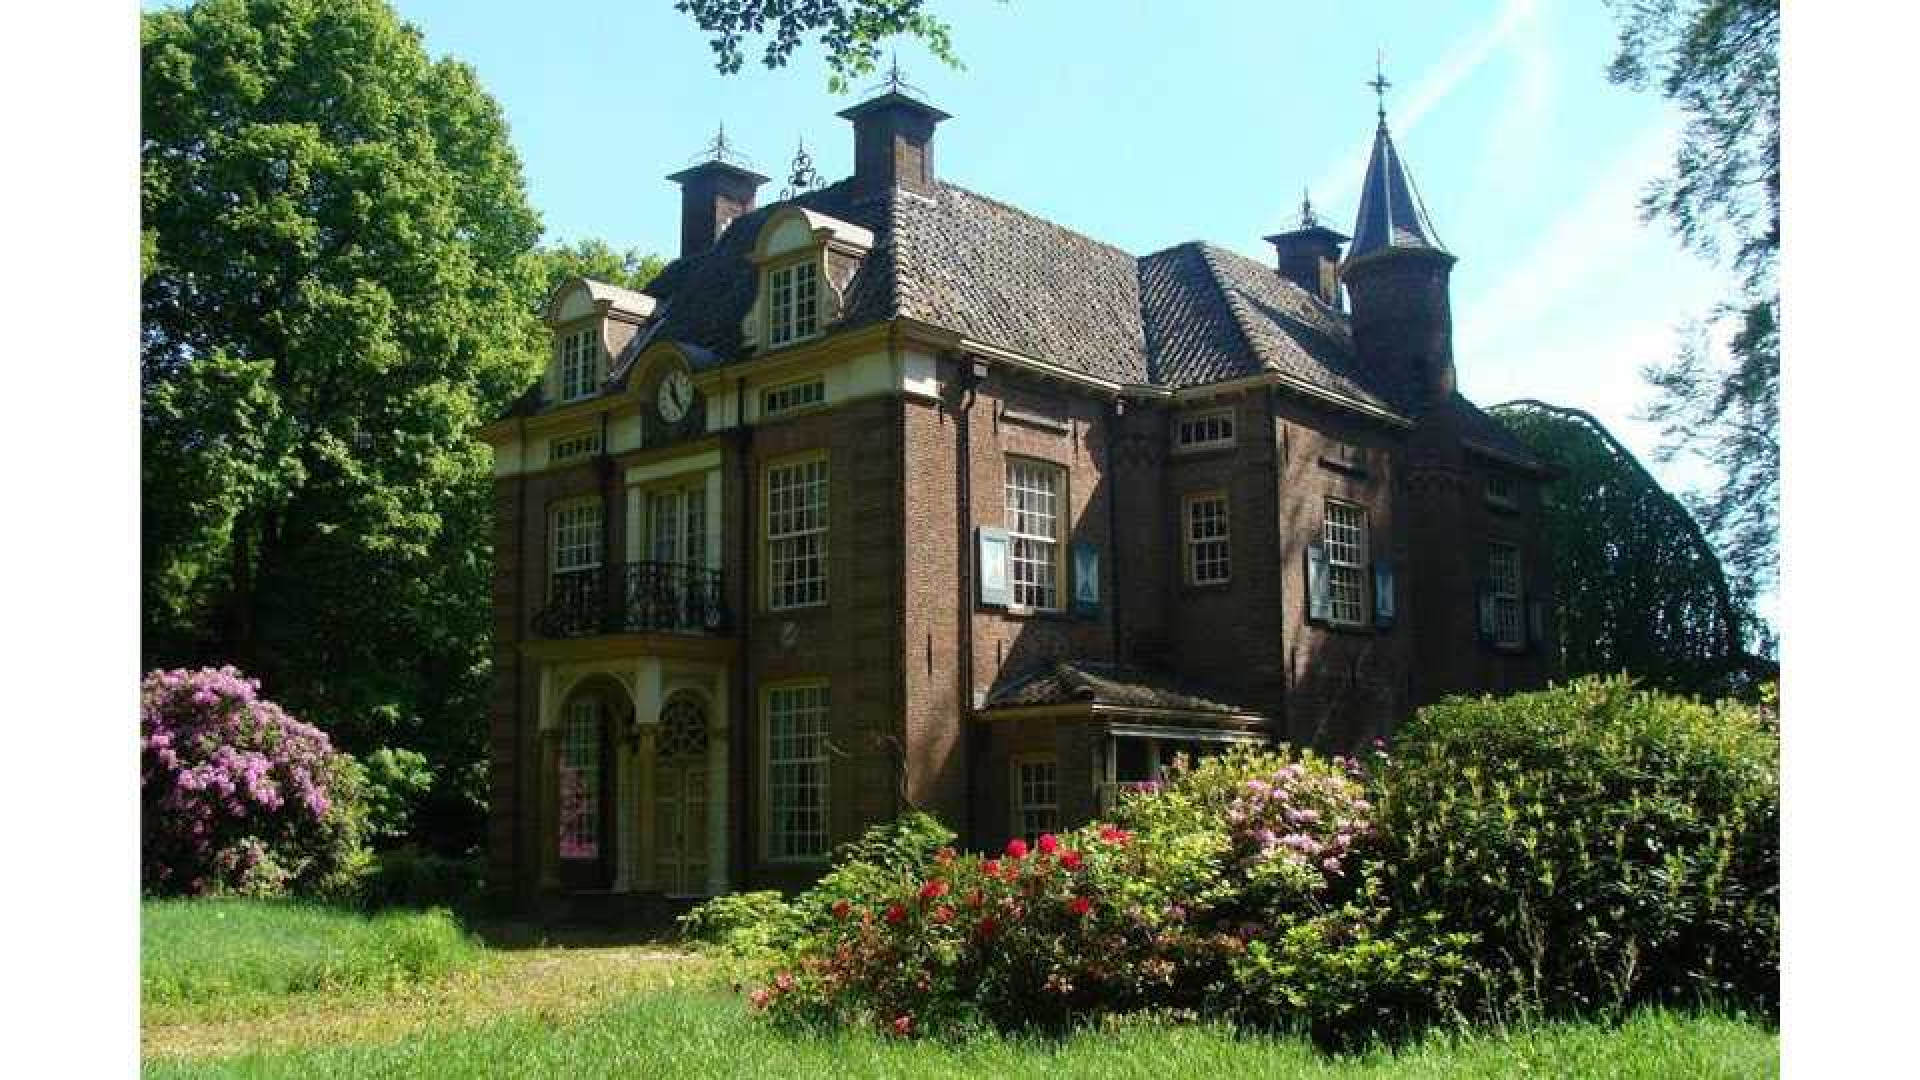 Oud PvdA topman Marcel van Dam verruilt riant landhuis voor eeuwenoud kasteel. Zie foto's 20